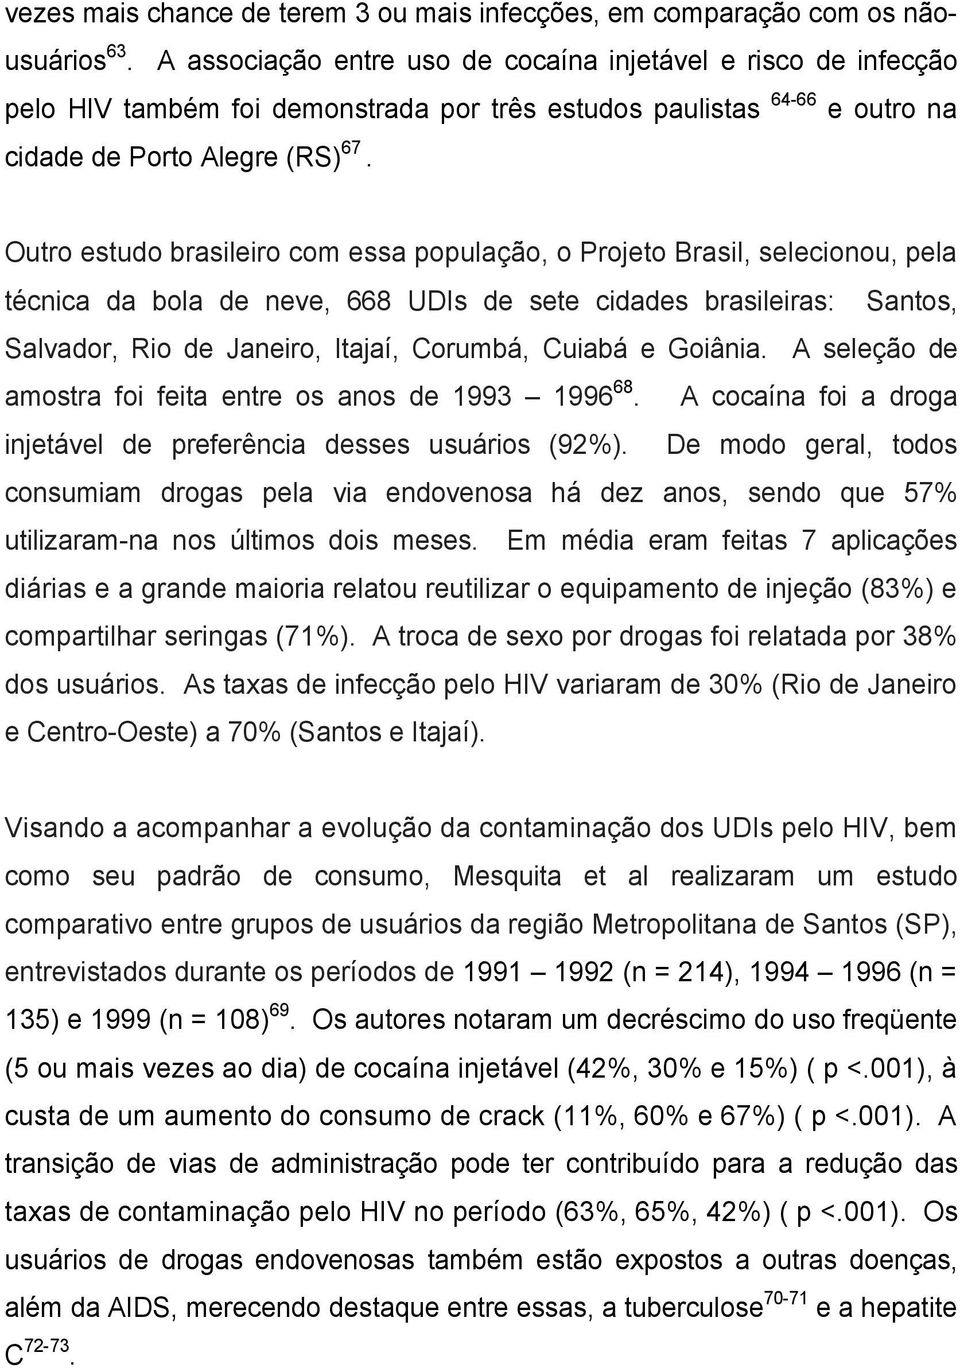 Outro estudo brasileiro com essa população, o Projeto Brasil, selecionou, pela técnica da bola de neve, 668 UDIs de sete cidades brasileiras: Santos, Salvador, Rio de Janeiro, Itajaí, Corumbá, Cuiabá